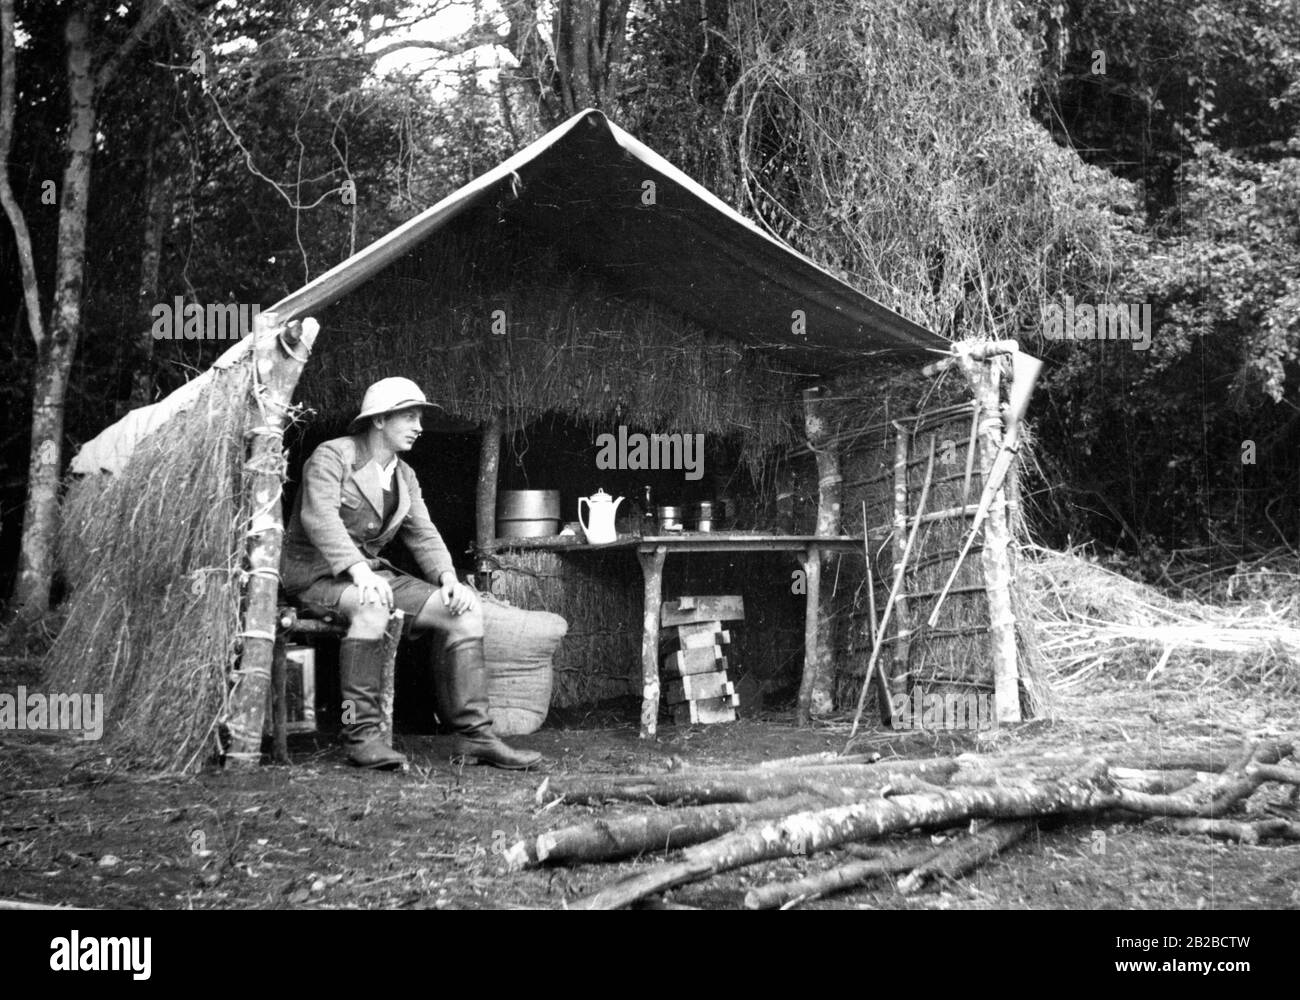 Ein deutscher Soldat sitzt in einer Grashütte in Oldeani im deutschen Ostafrika. Das Bild entstand zu Beginn der deutschen Kolonialzeit und die Hütte war die erste Befestigungsanlage, die von den deutschen Soldaten nach ihrer Ankunft errichtet wurde. Undatiertes Foto. Stockfoto